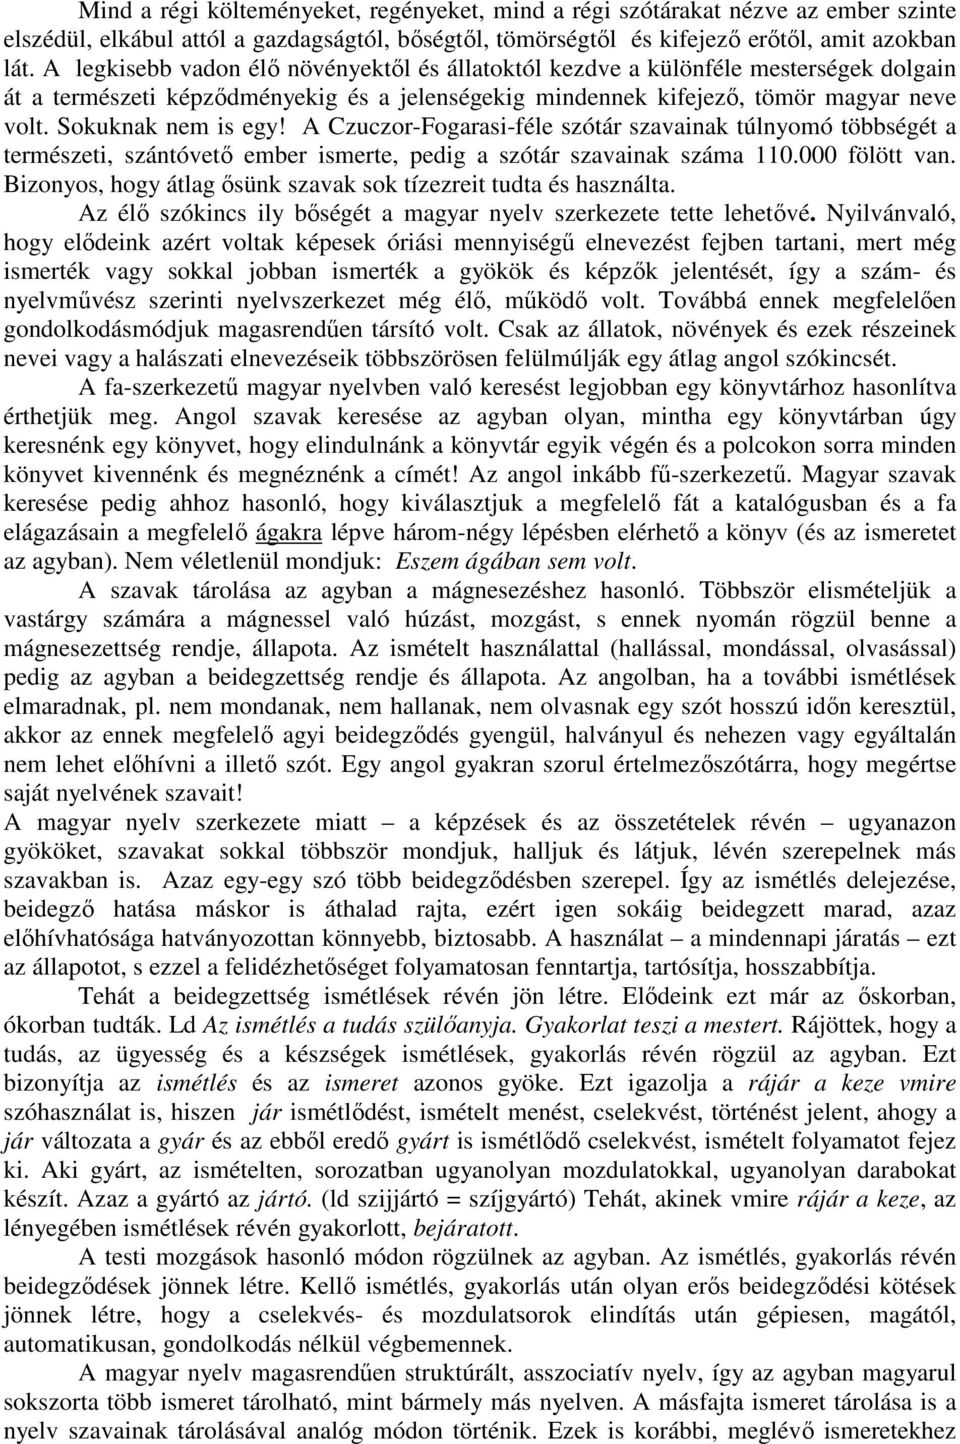 A Czuczor-Fogarasi-féle szótár szavainak túlnyomó többségét a természeti, szántóvető ember ismerte, pedig a szótár szavainak száma 110.000 fölött van.